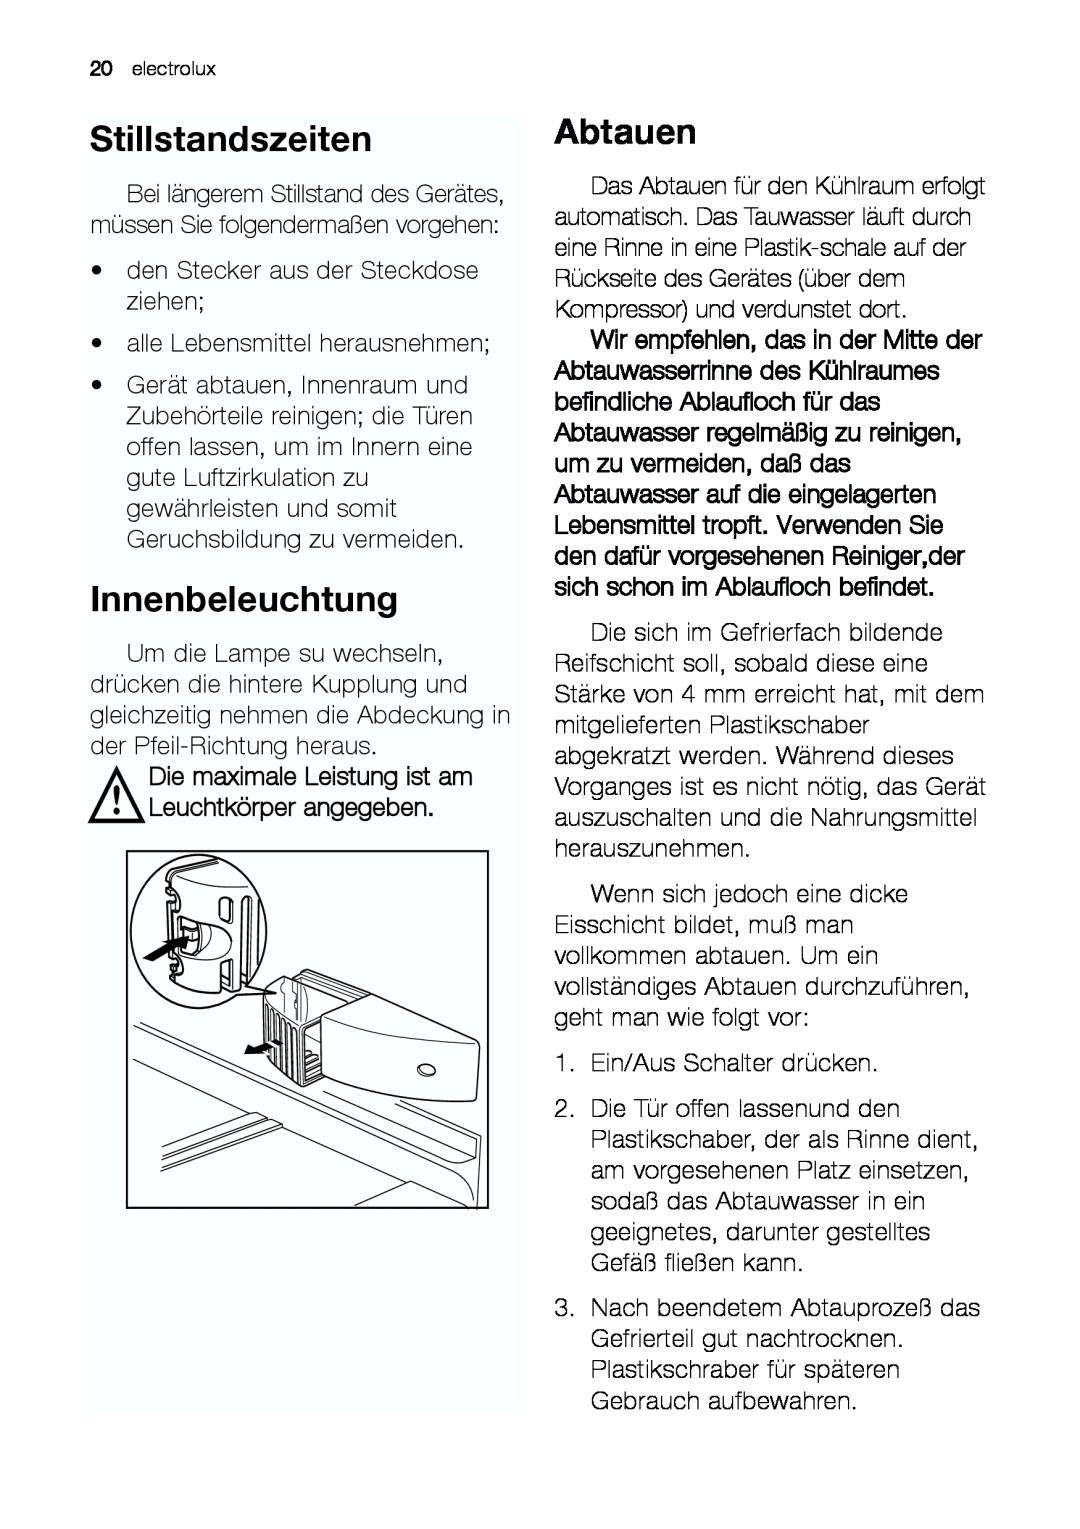 Electrolux JCZ 94181 manual Stillstandszeiten, Innenbeleuchtung, Abtauen 